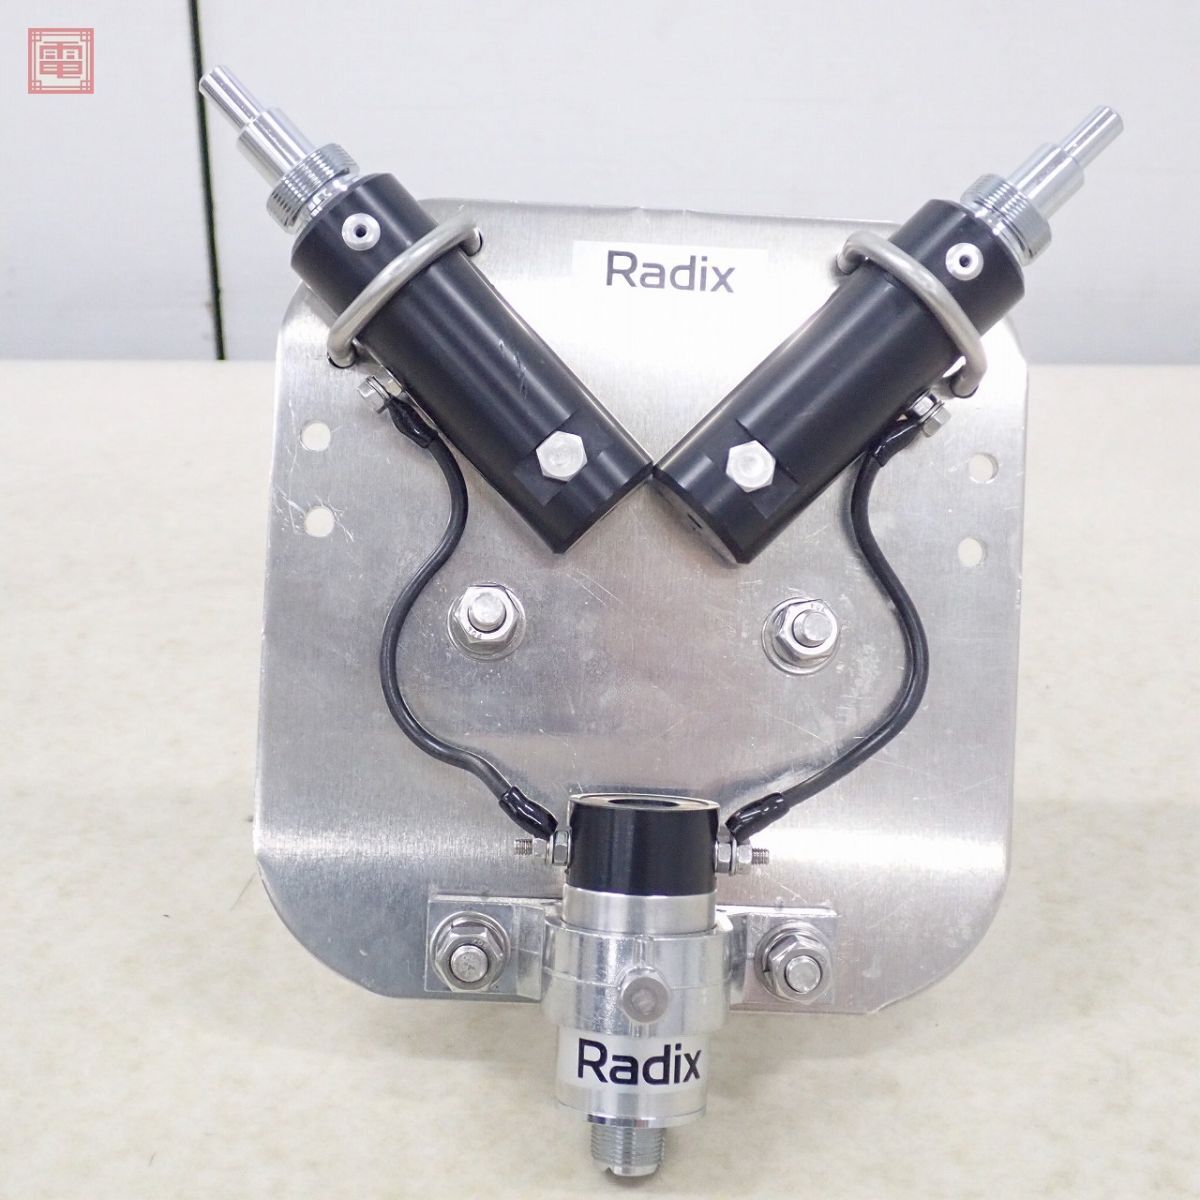 Radix RD-BL/G аспидистра есть крепление с руководством пользователя la Dick s[20